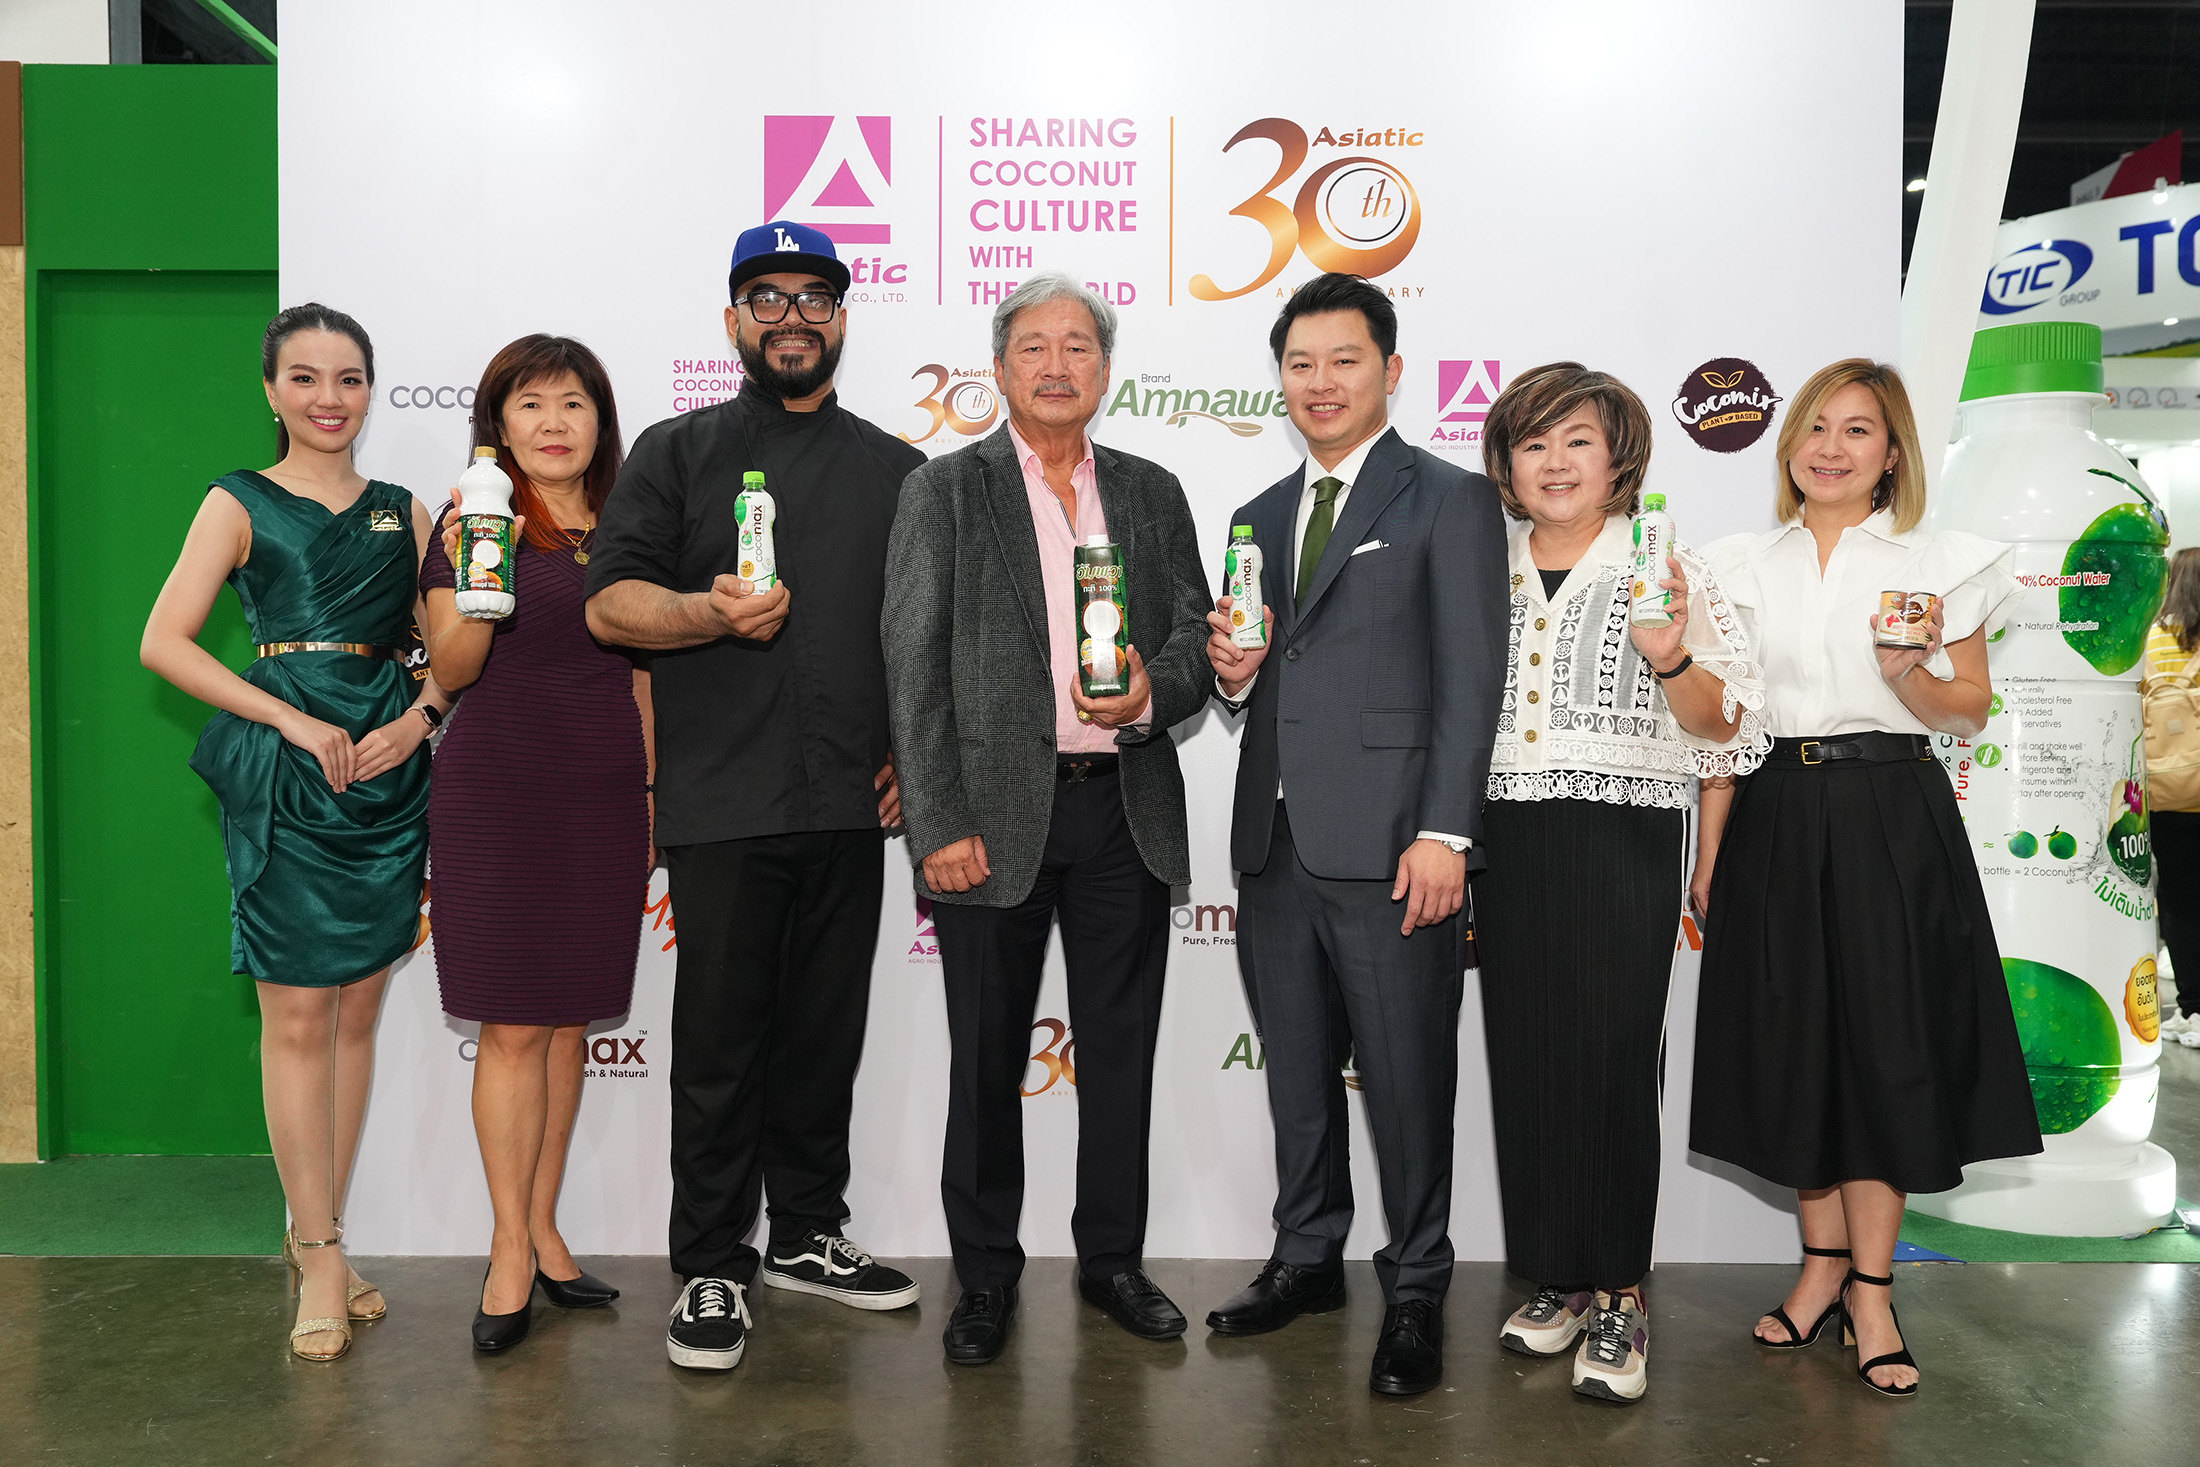 ครบรอบ 30 ปี เอเซียติคฯ ตอกย้ำวิสัยทัศน์ “Sharing Coconut Culture With The World” จากแบรนด์ไทยเติบโตกว่า 70 ประเทศทั่วโลก ครั้งแรก! ของกิจกรรม Chef Table โดย Iron Chef Thailand ภายในงาน THAIFEX – Anuga Asia 2023 ยกระดับวัตถุดิบท้องถิ่น สู่เมนูอาหารระดับเวิลด์คลาส